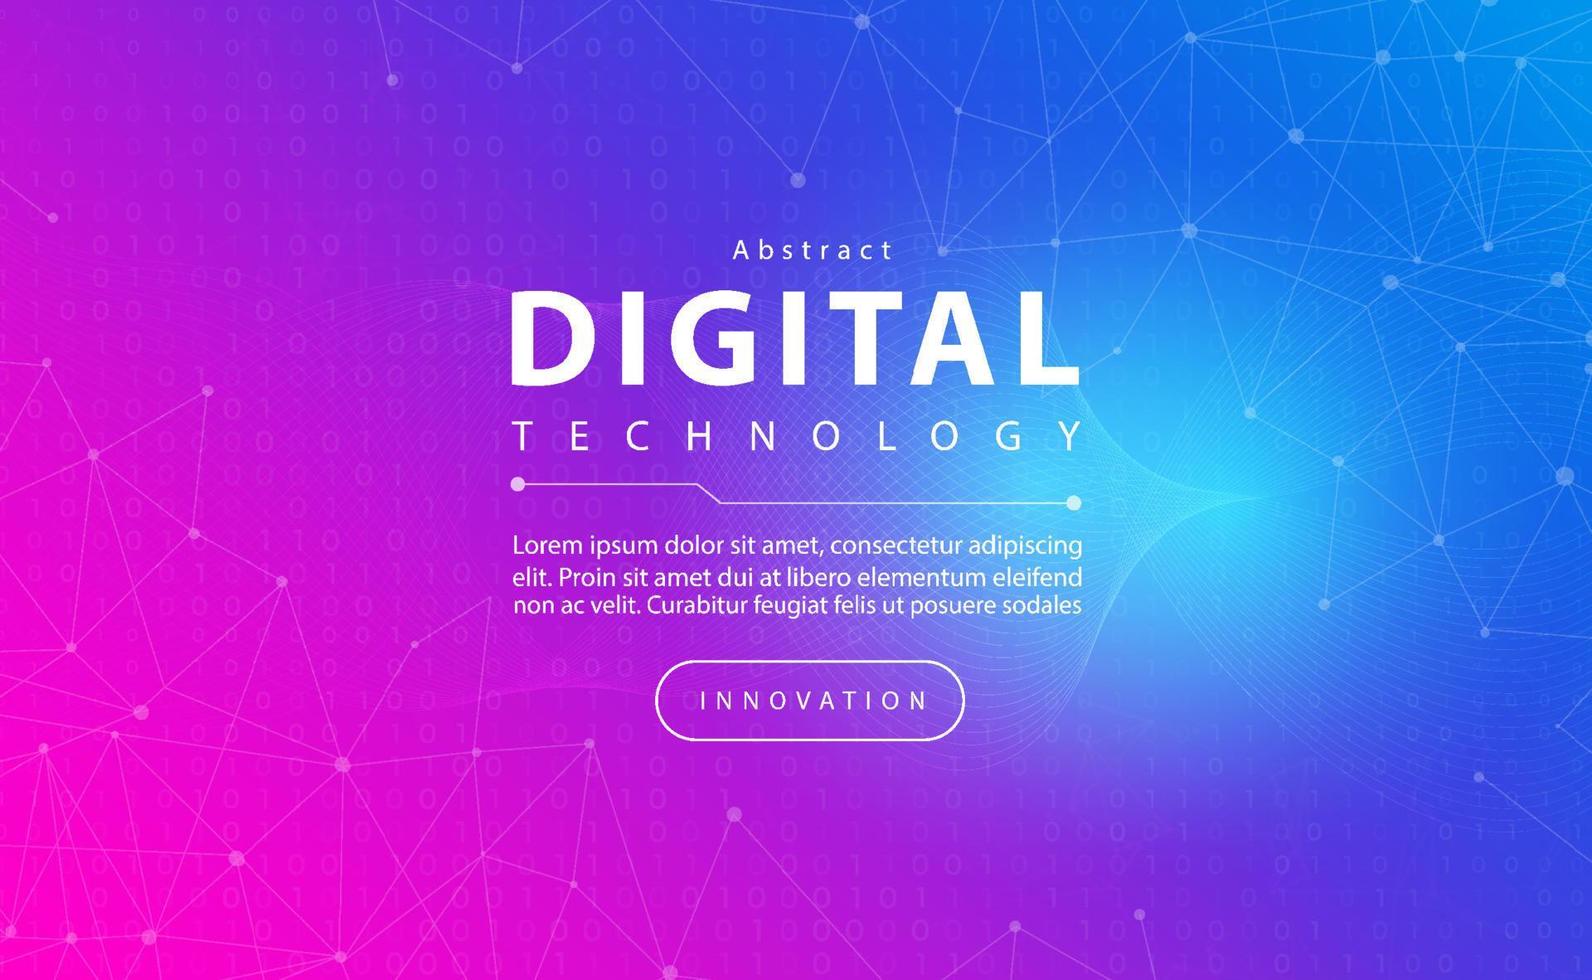 bannière de technologie numérique concept de fond bleu rose avec effets de lumière de ligne technologique, technologie abstraite, vecteur d'illustration pour la conception graphique